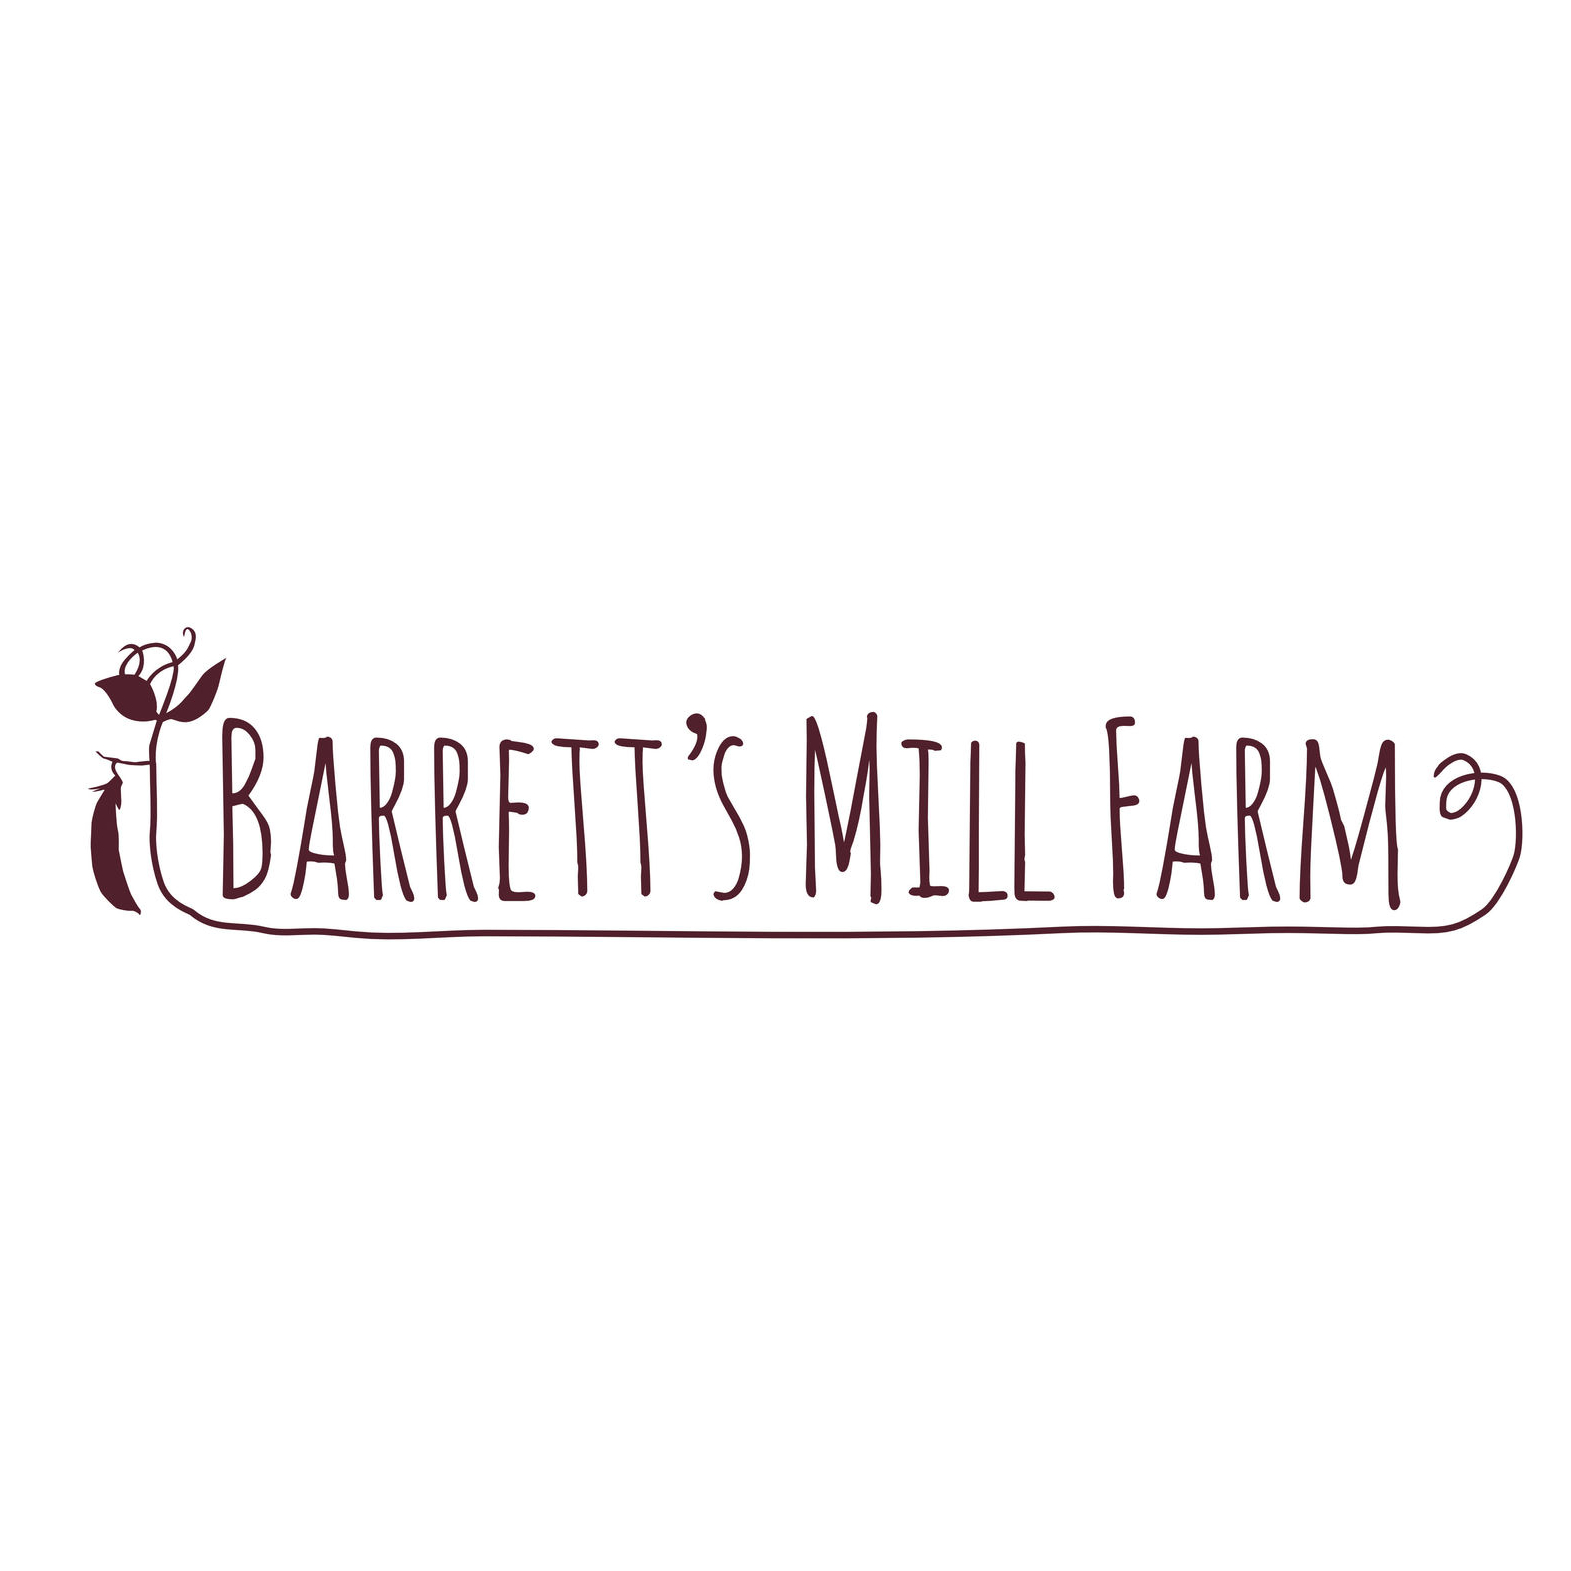 Barrett's Mill Farm